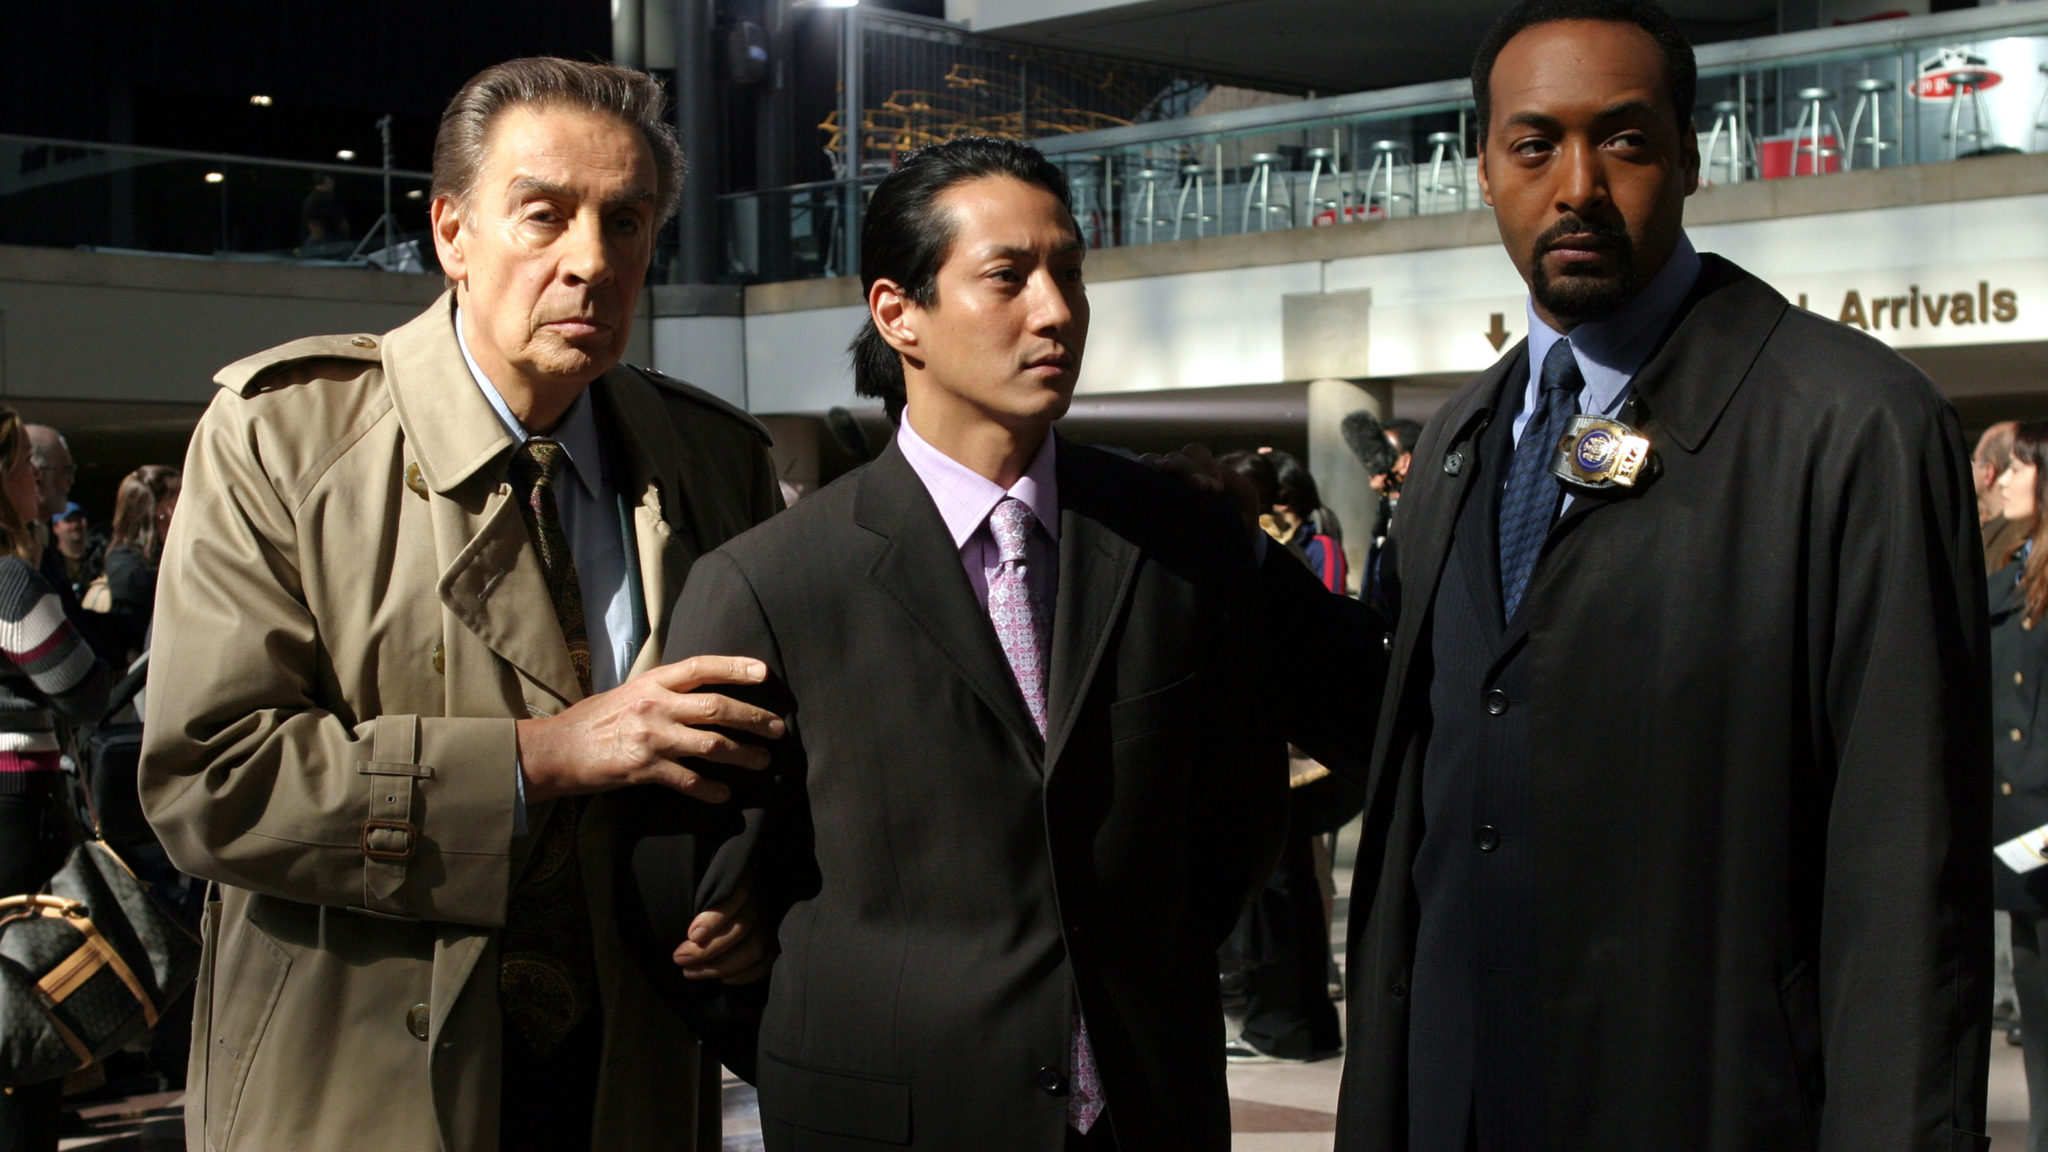 Law & Order Season Finale Full Episode Watch Online ON NBC Network